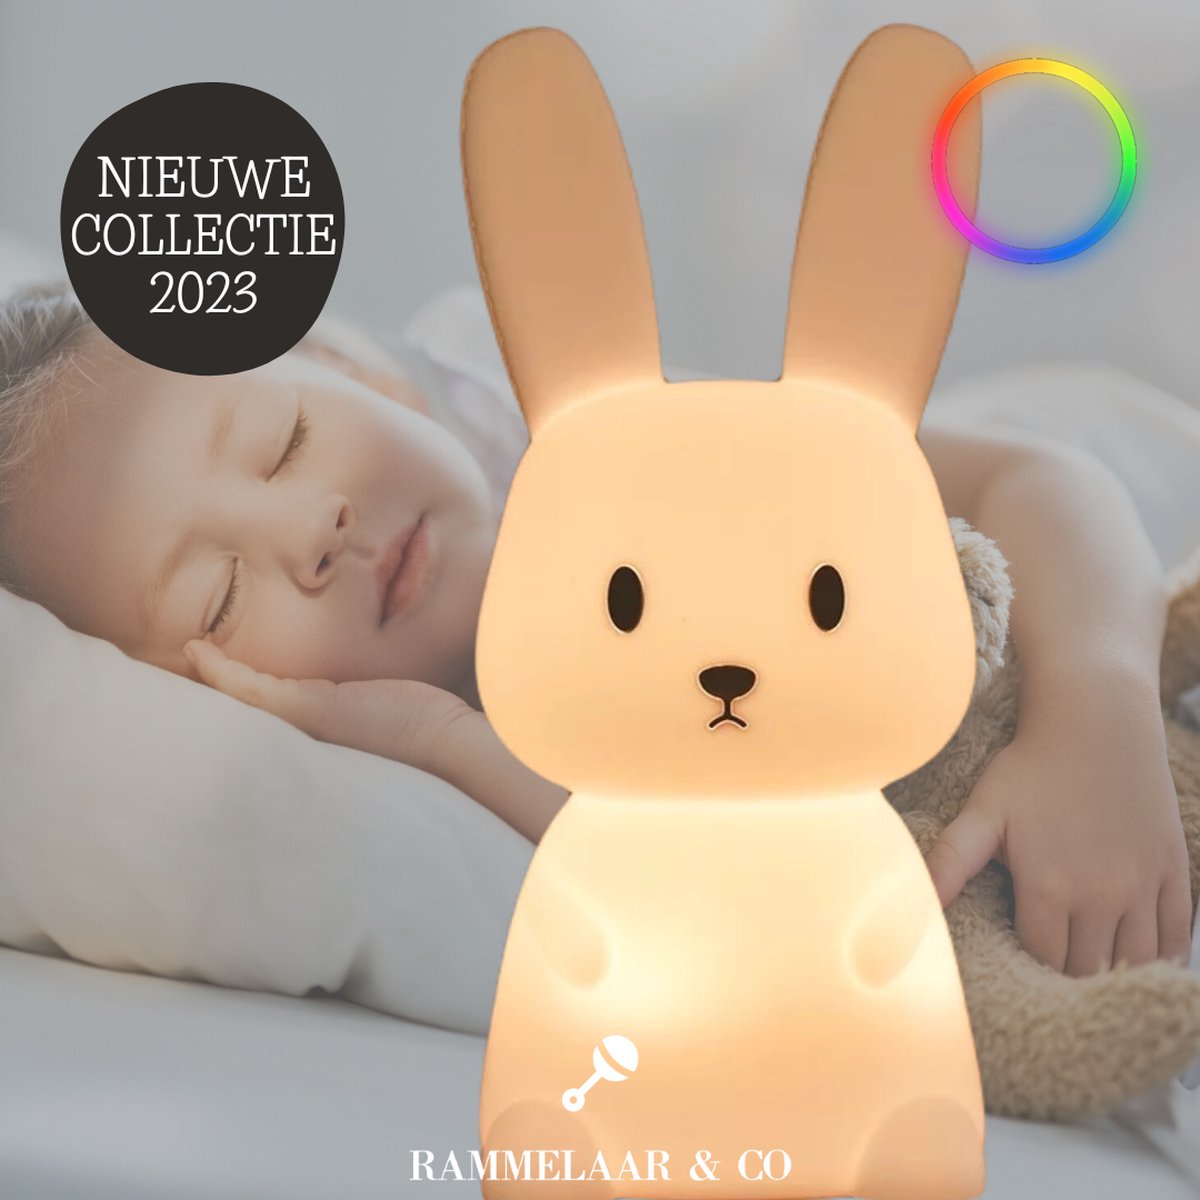 Nachtlampje Kinderen – Bunny – Kinderlampen – Nachtlampje Baby – LED RGB & warm Wit – Nachtlampje Konijn – USB Oplaadbaar – Nachtlampje – Kindvriendelijk – Veilleuse bebe – Veilleuse – Veilleuse lapin – Lapin